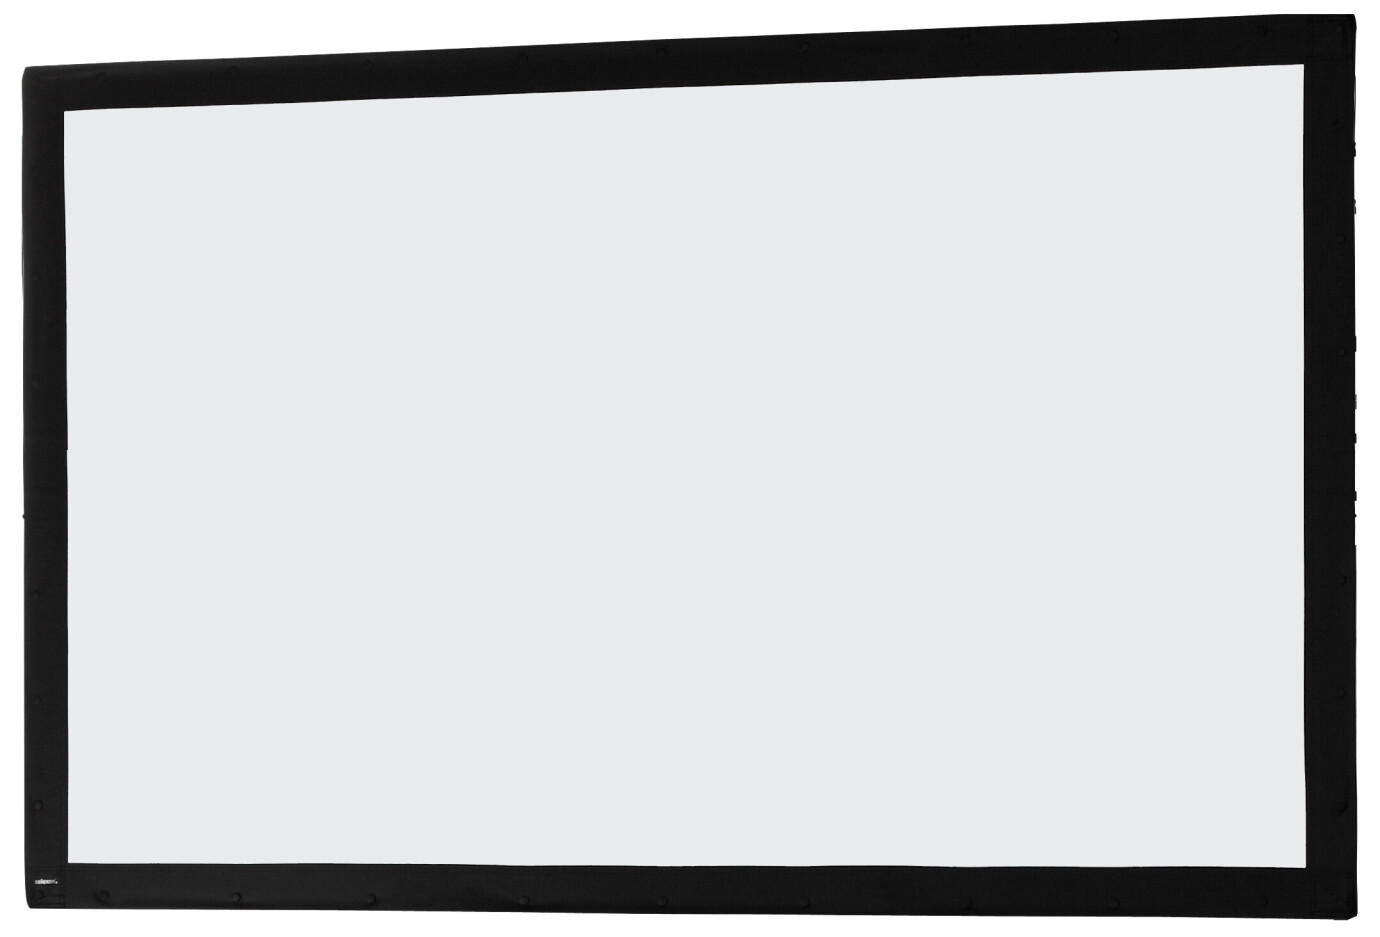 Toile 244 x 152 cm Ecran sur cadre celexon « Mobil Expert », projection avant